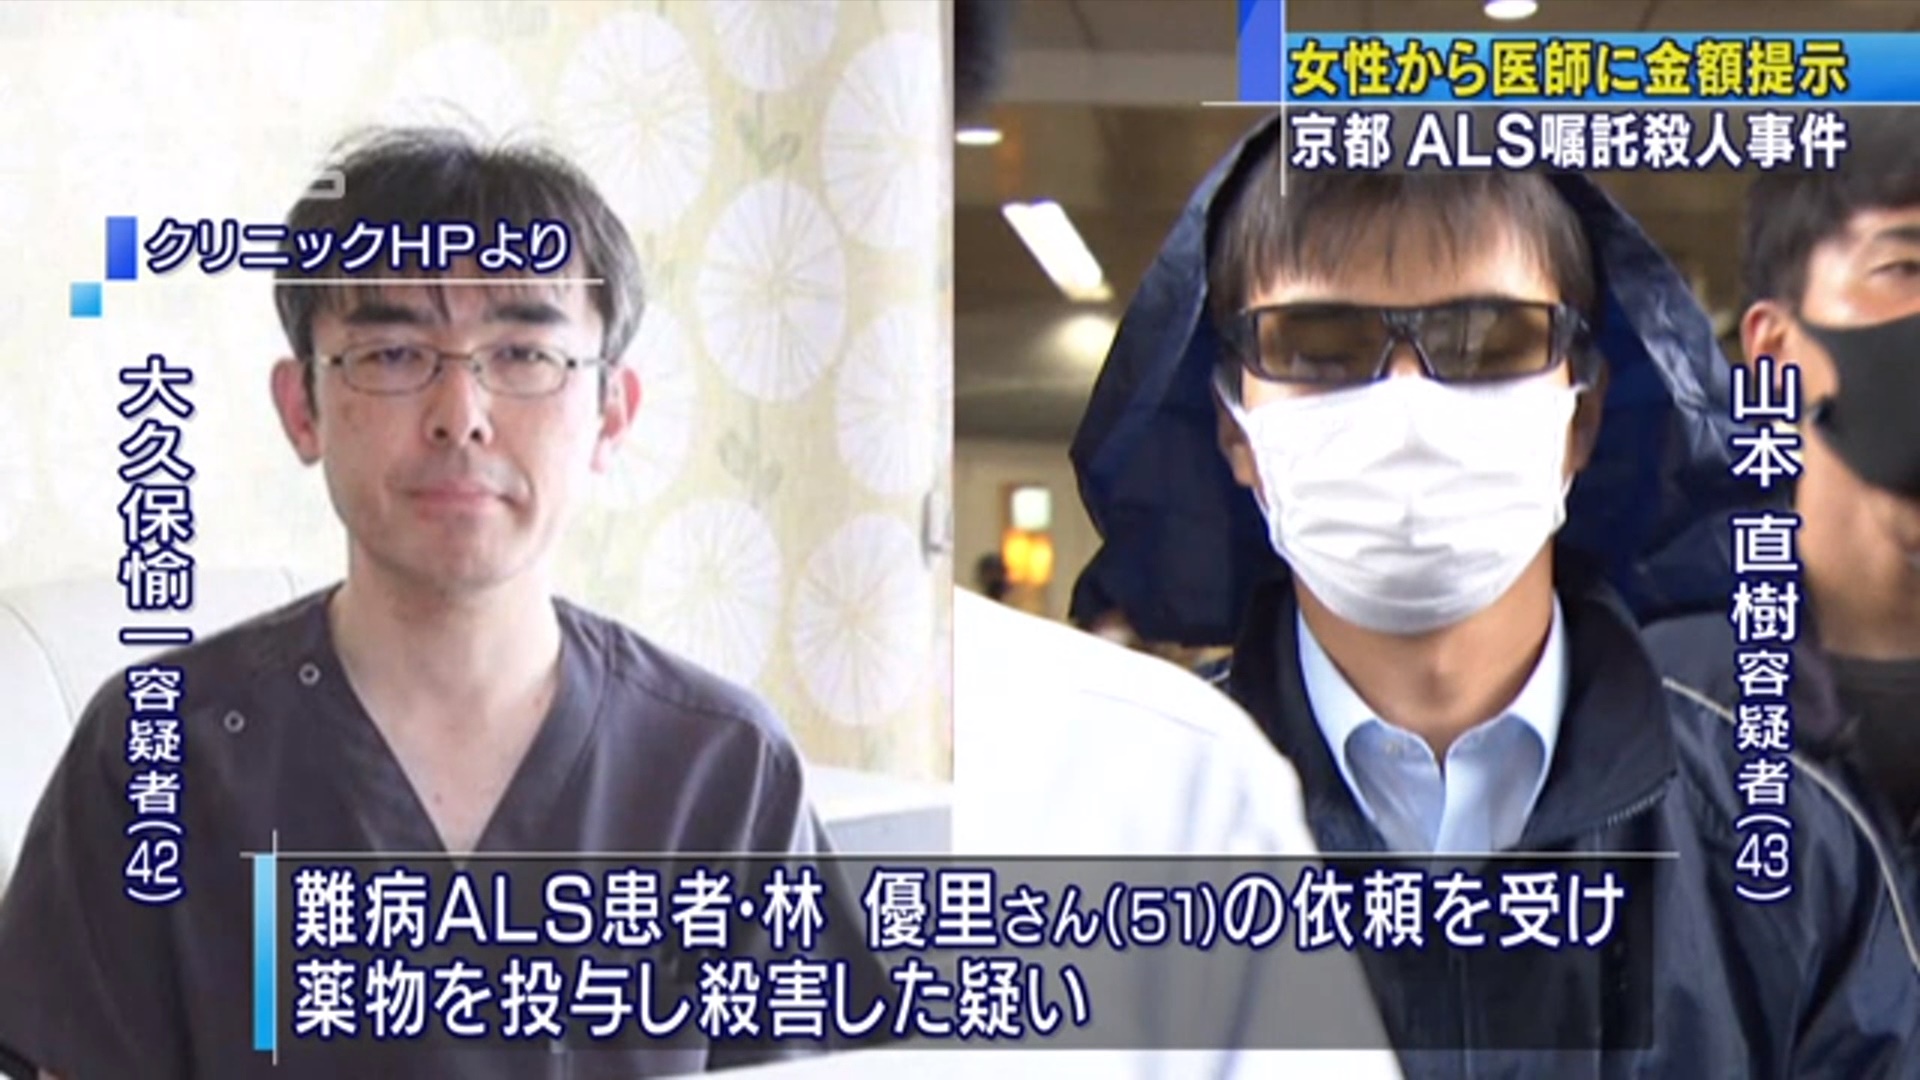 지난 23일 촉탁살인 혐의로 일본 경찰에 체포된 오쿠보 요시카즈(왼쪽)용의자와 야마모토 나오키 용의자. TV아사히 화면 캡처